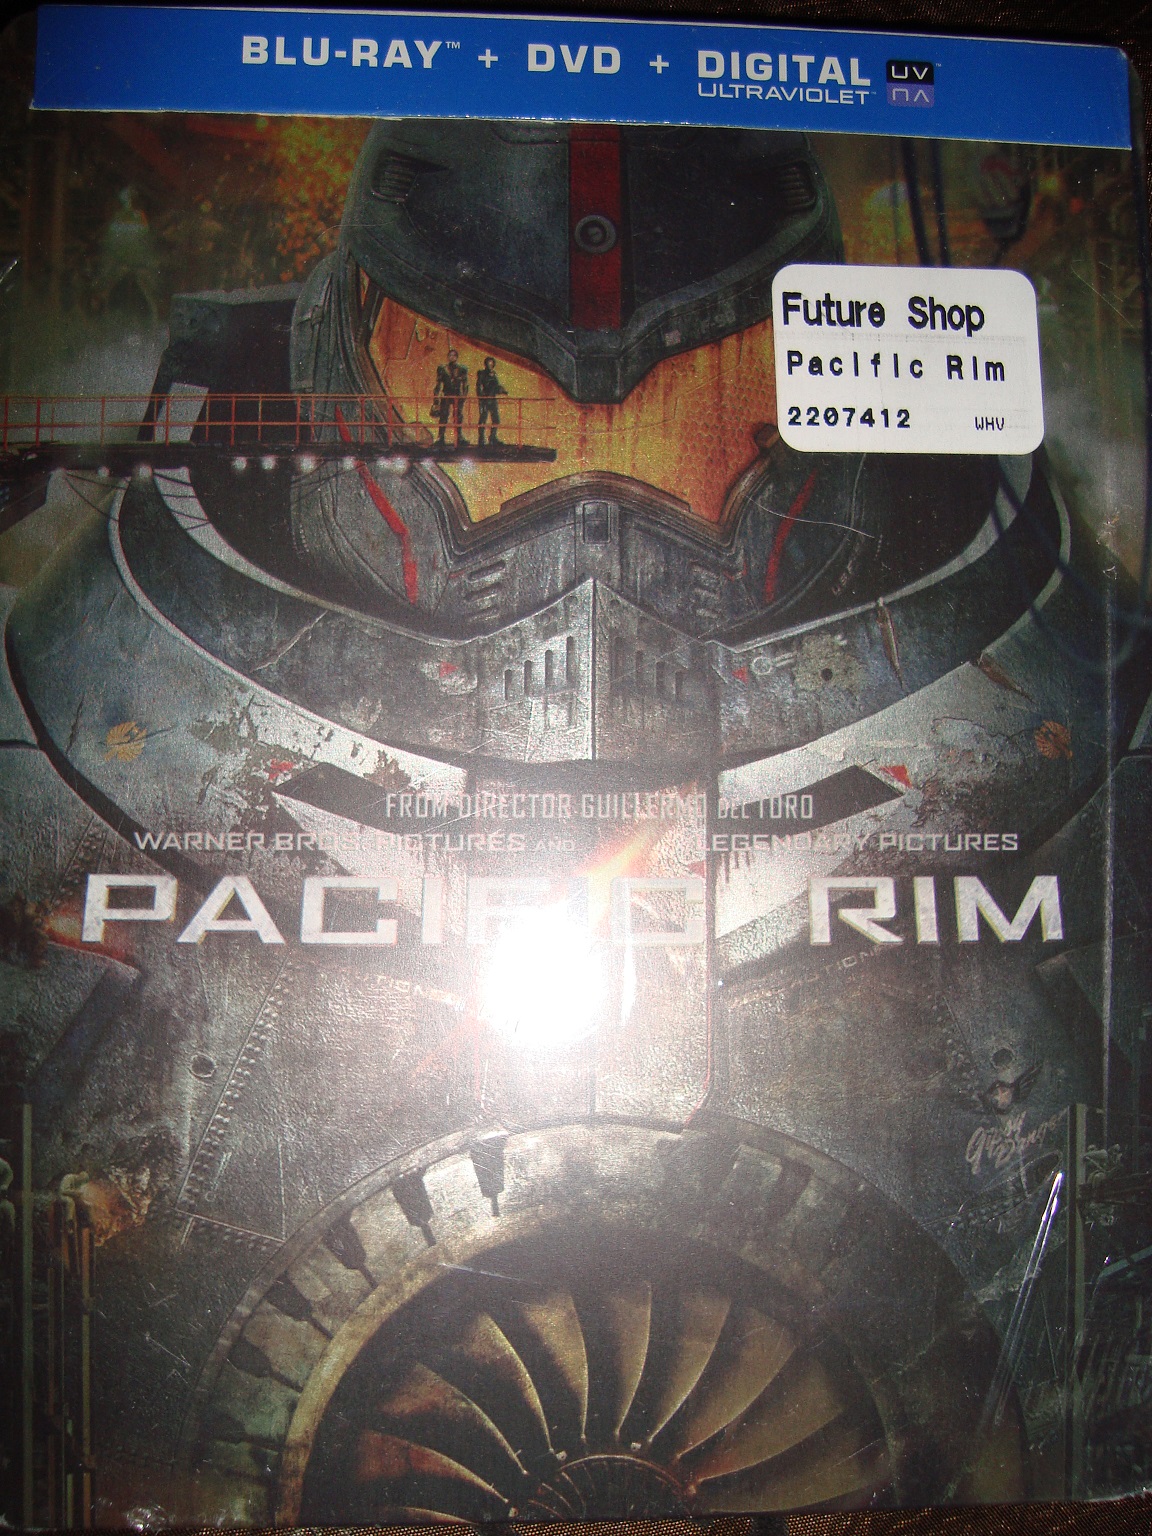 Pacific Rim FS Steelbook!